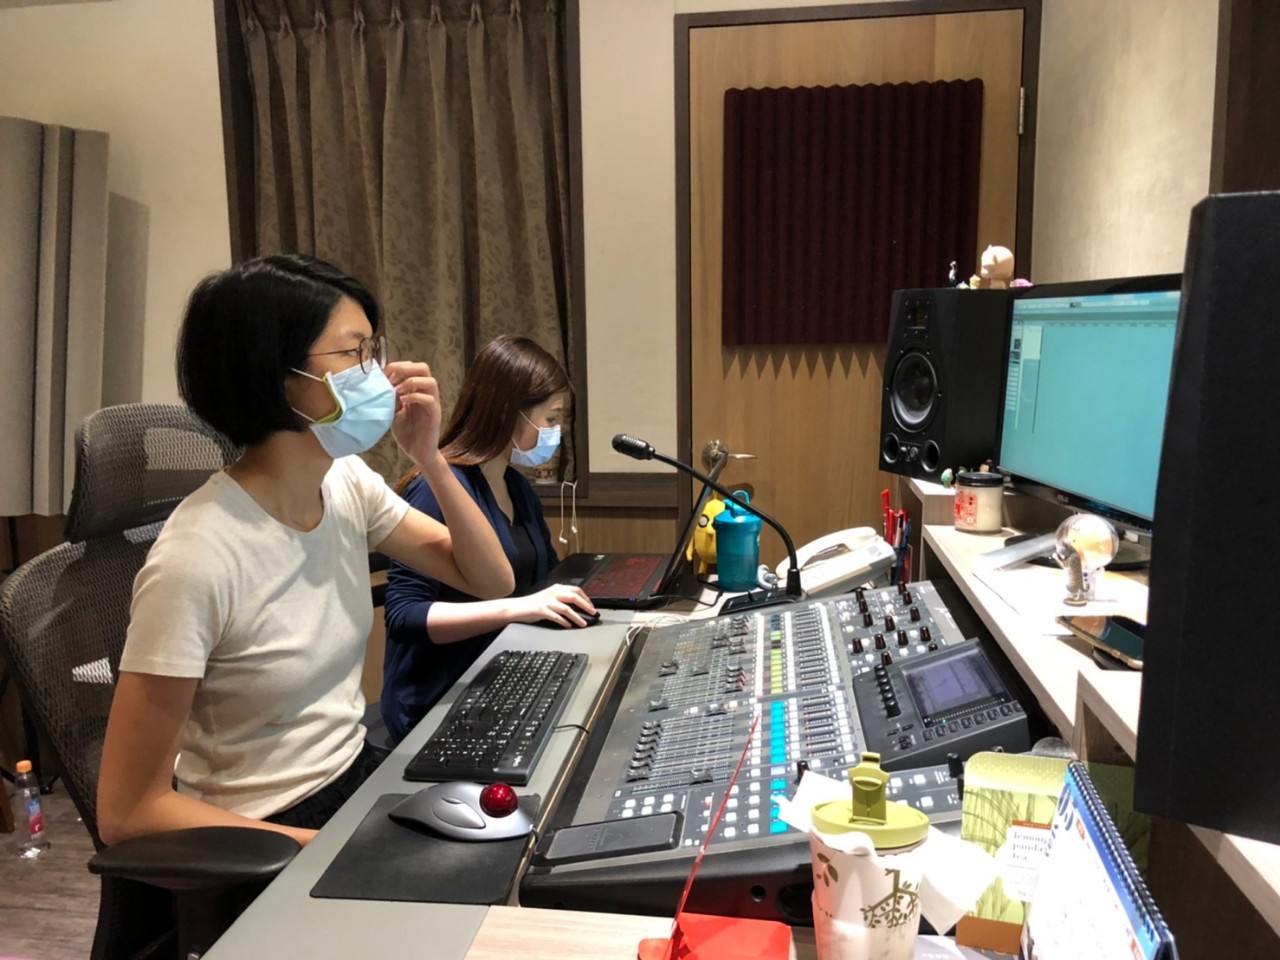 聲音導演井西跟錄音師悅農正專心監聽聲優的演出。